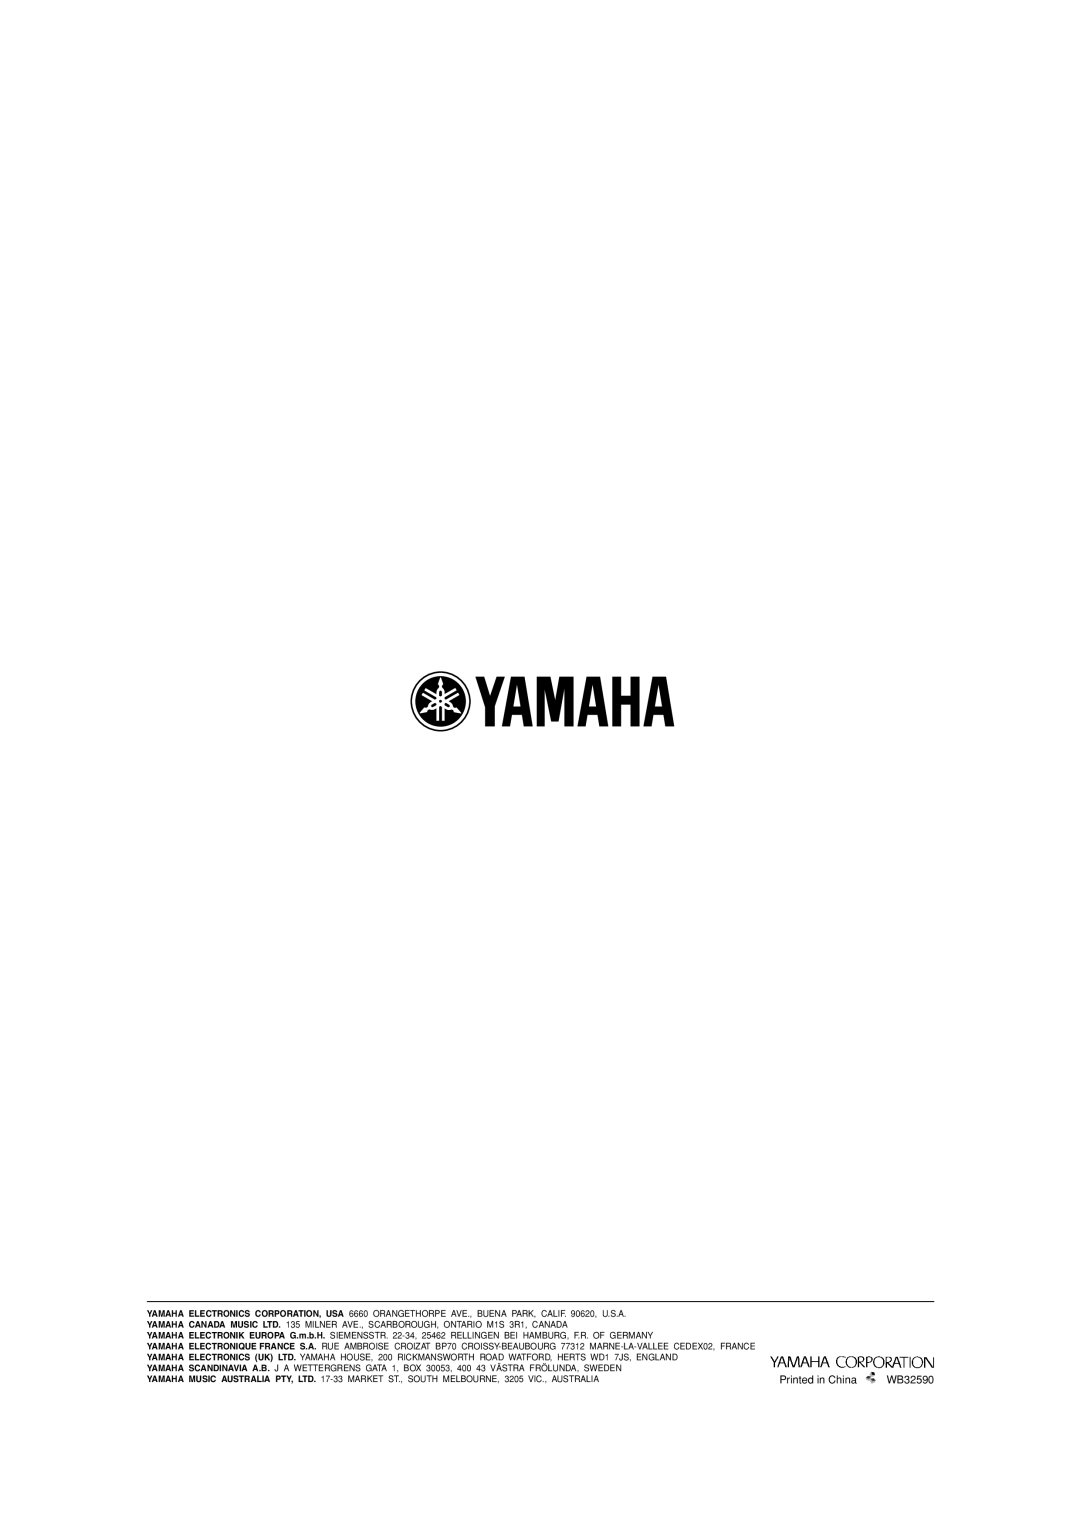 Yamaha HTR-5630RDS owner manual YAMAHA ELECTRONICS CORPORATION, USA 6660 ORANGETHORPE AVE., BUENA PARK, CALIF. 90620, U.S.A 